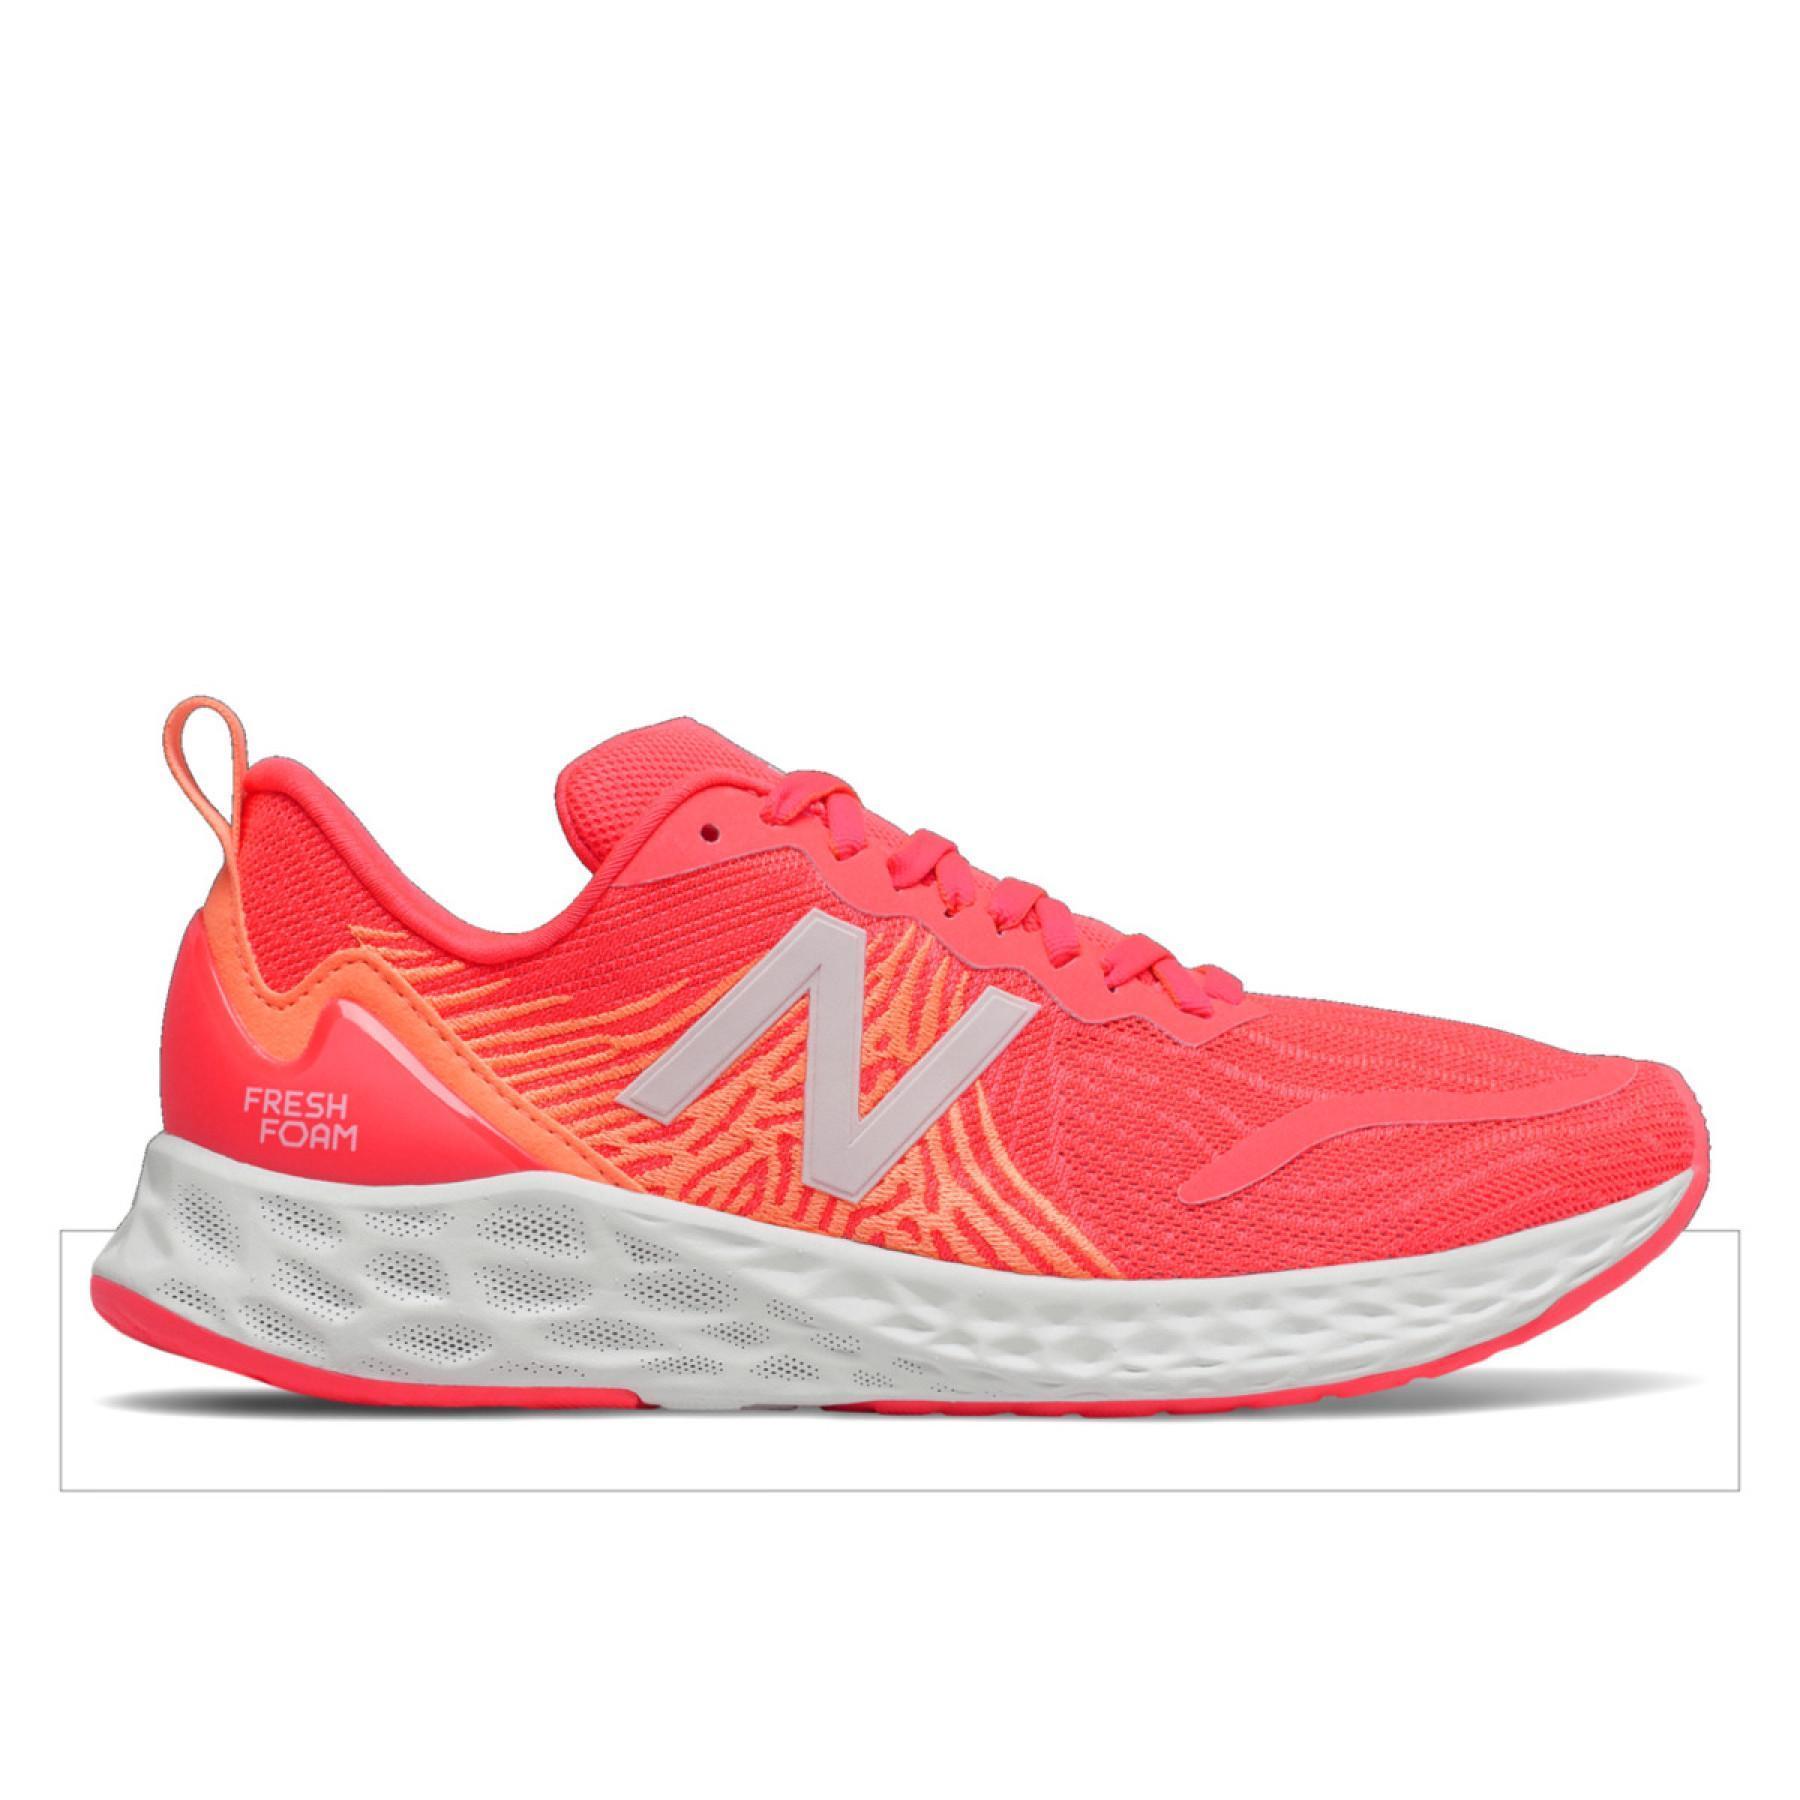 Chaussures de running femme New Balance fresh foam tempo